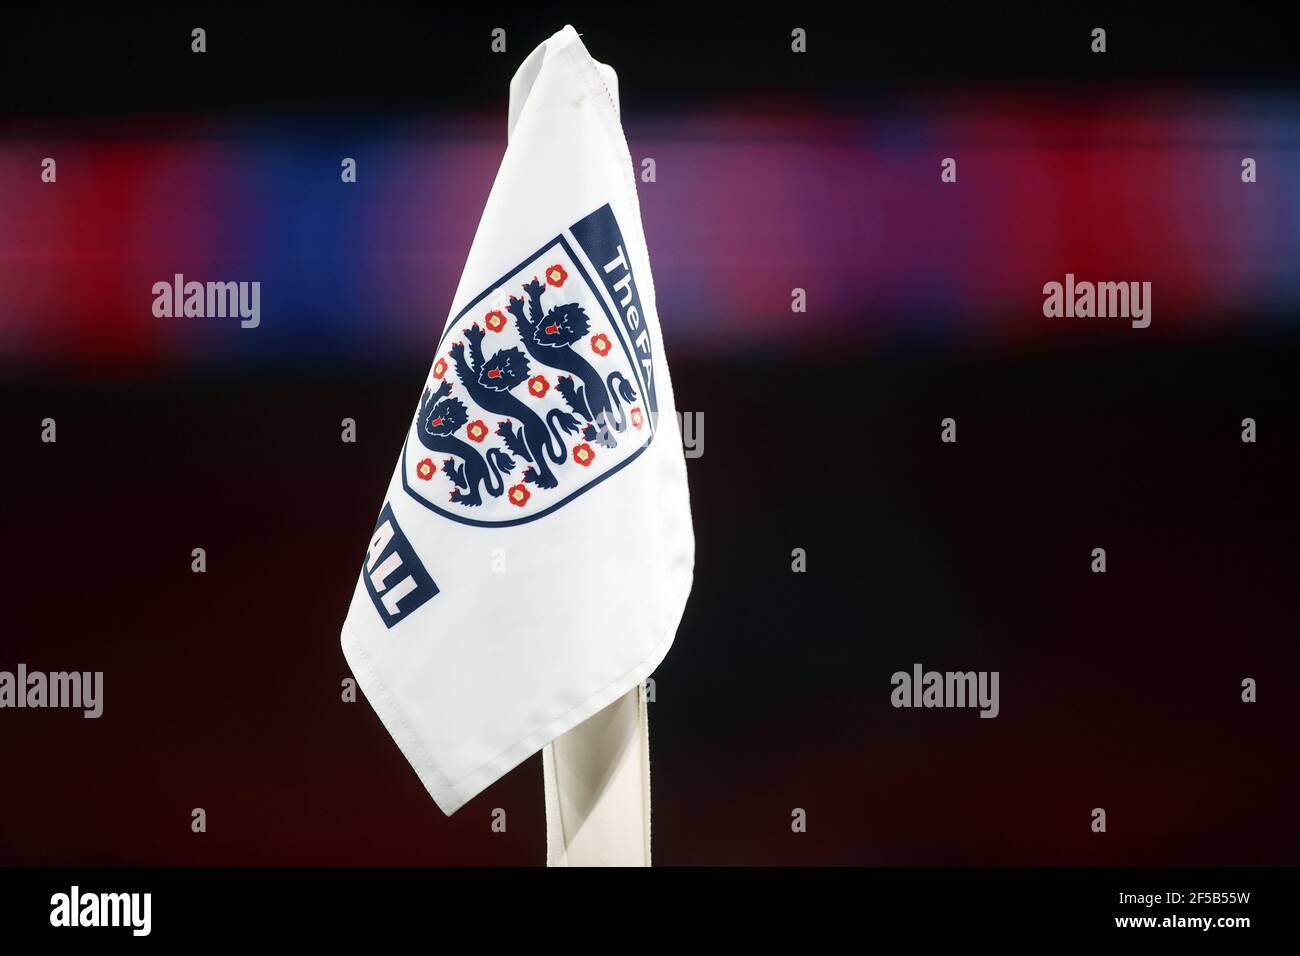 Una bandiera d'angolo con marchio inglese durante la partita di qualificazione della Coppa del mondo FIFA 2022 al Wembley Stadium di Londra. Data immagine: Giovedì 25 marzo 2021. Foto Stock